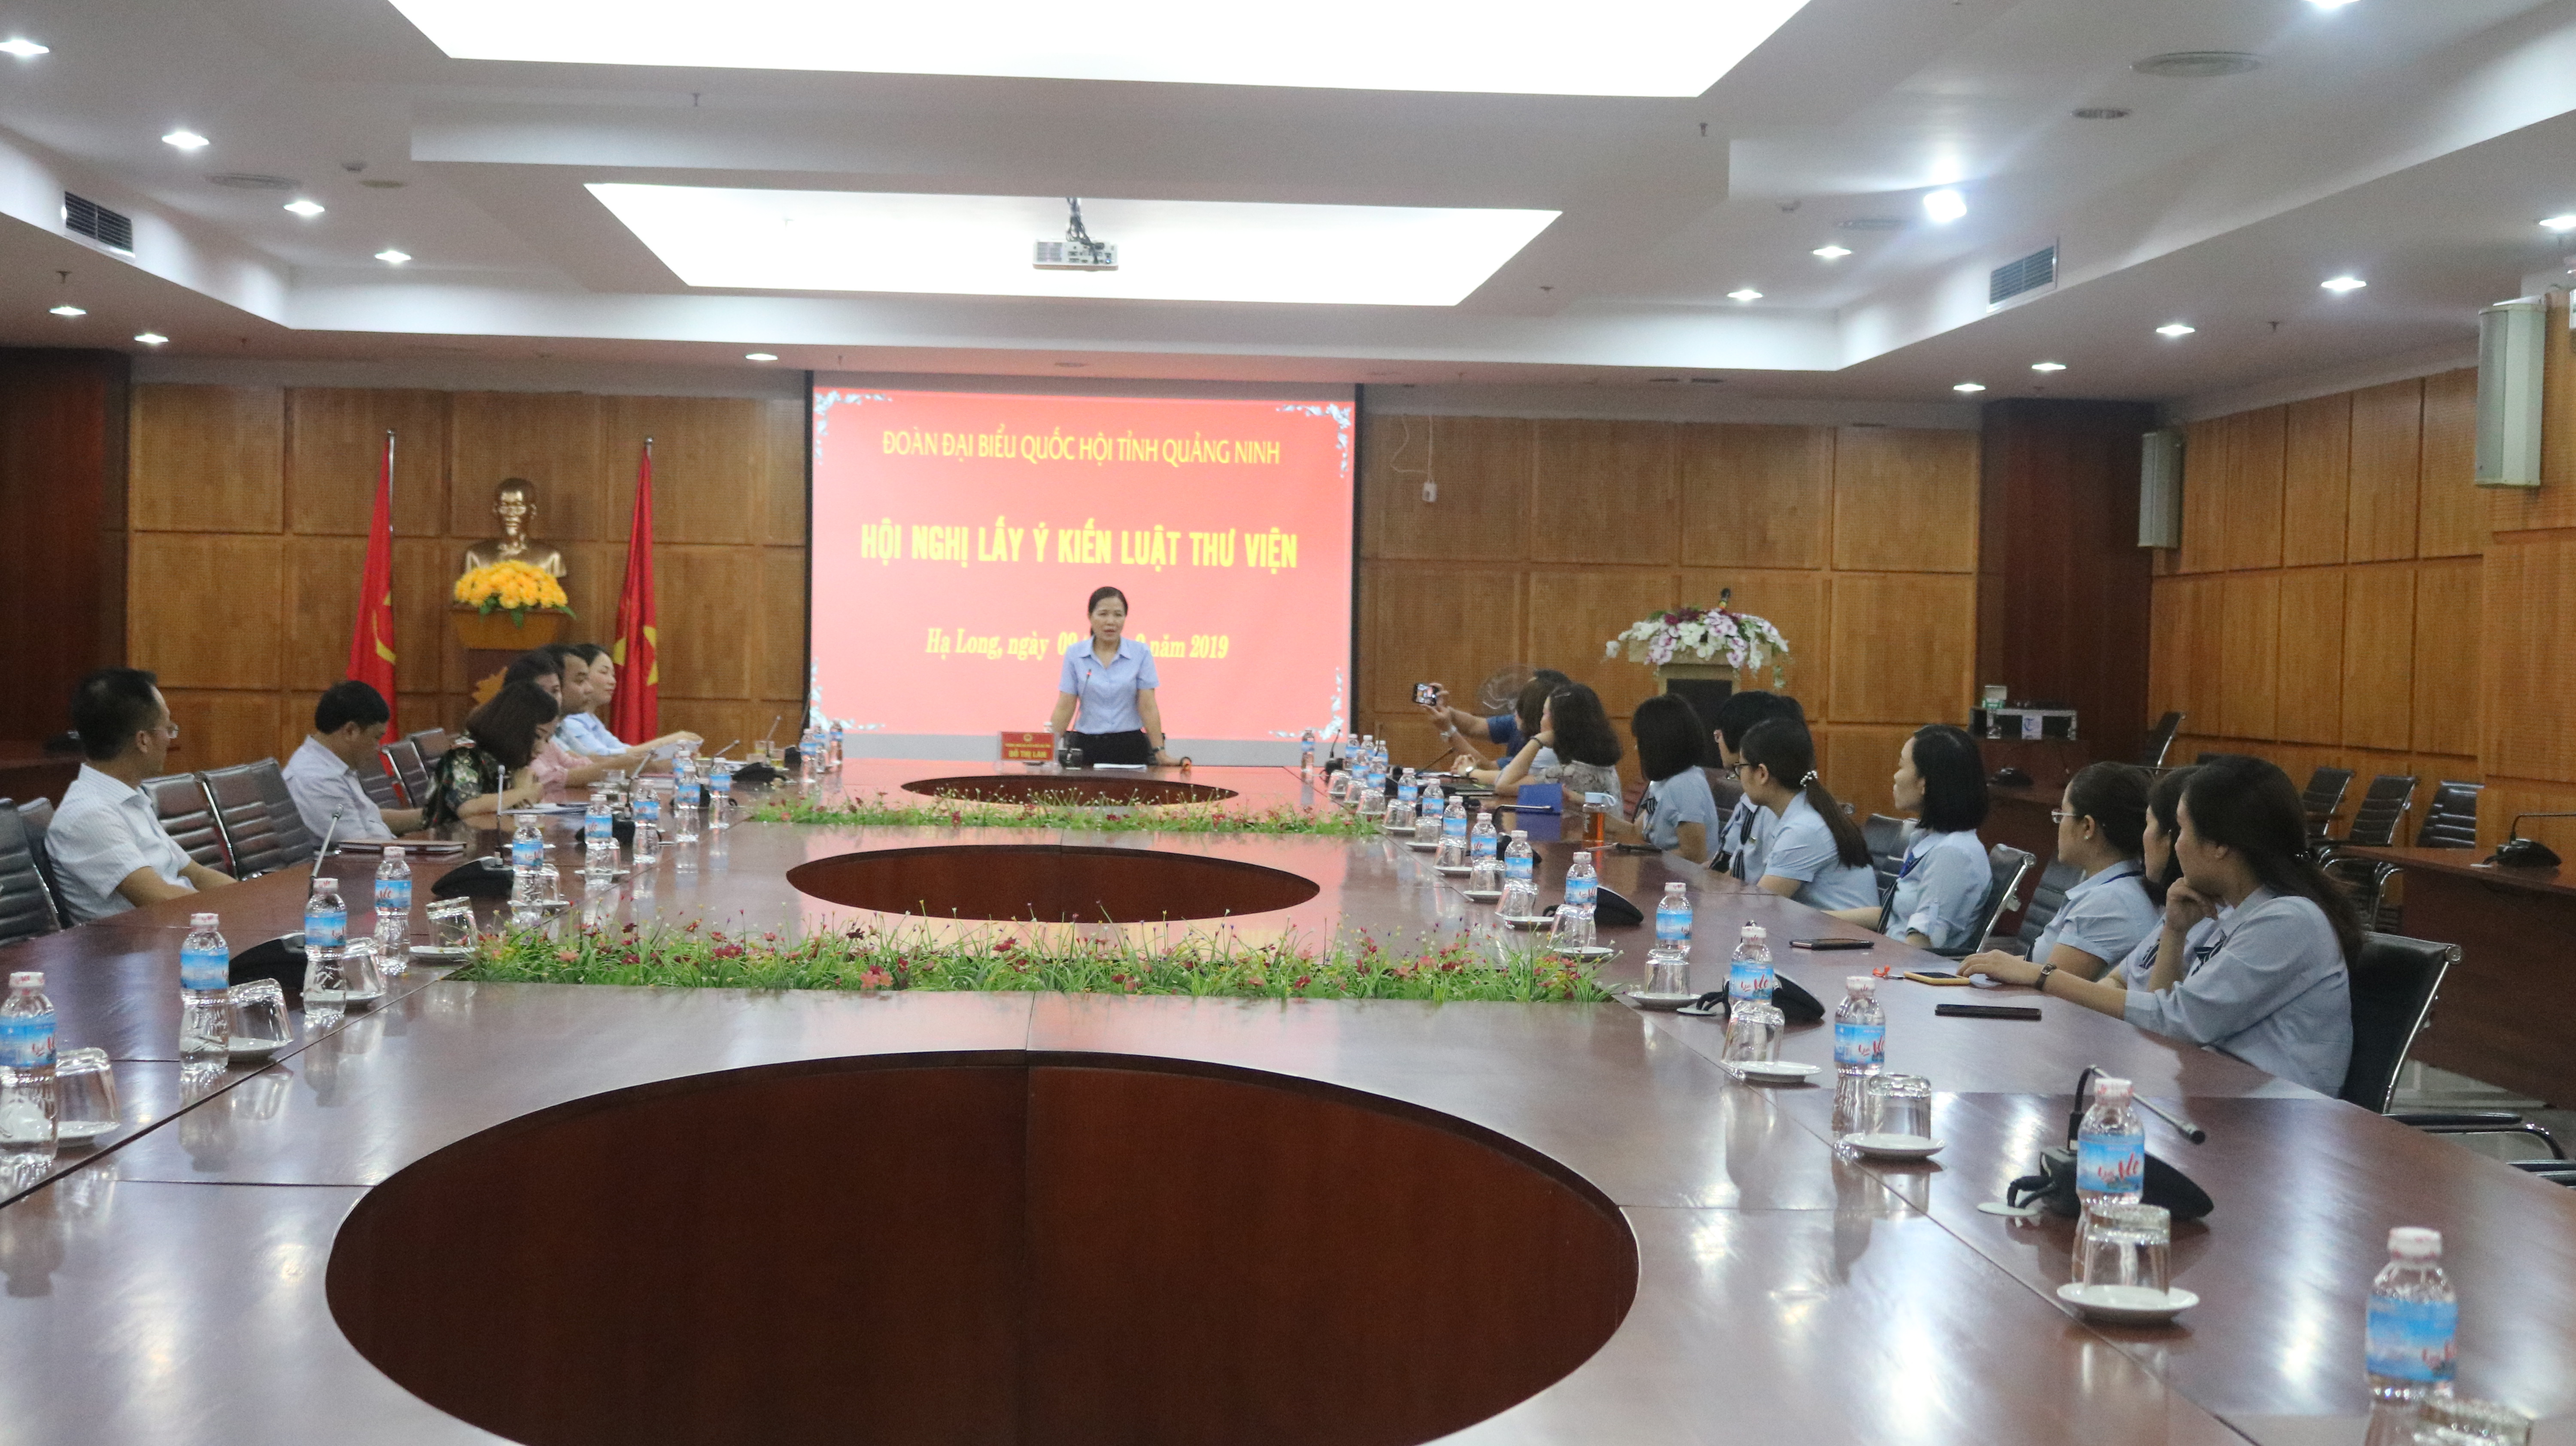 Đoàn ĐBQH tỉnh Quảng Ninh lấy lý kiến luật thư viện